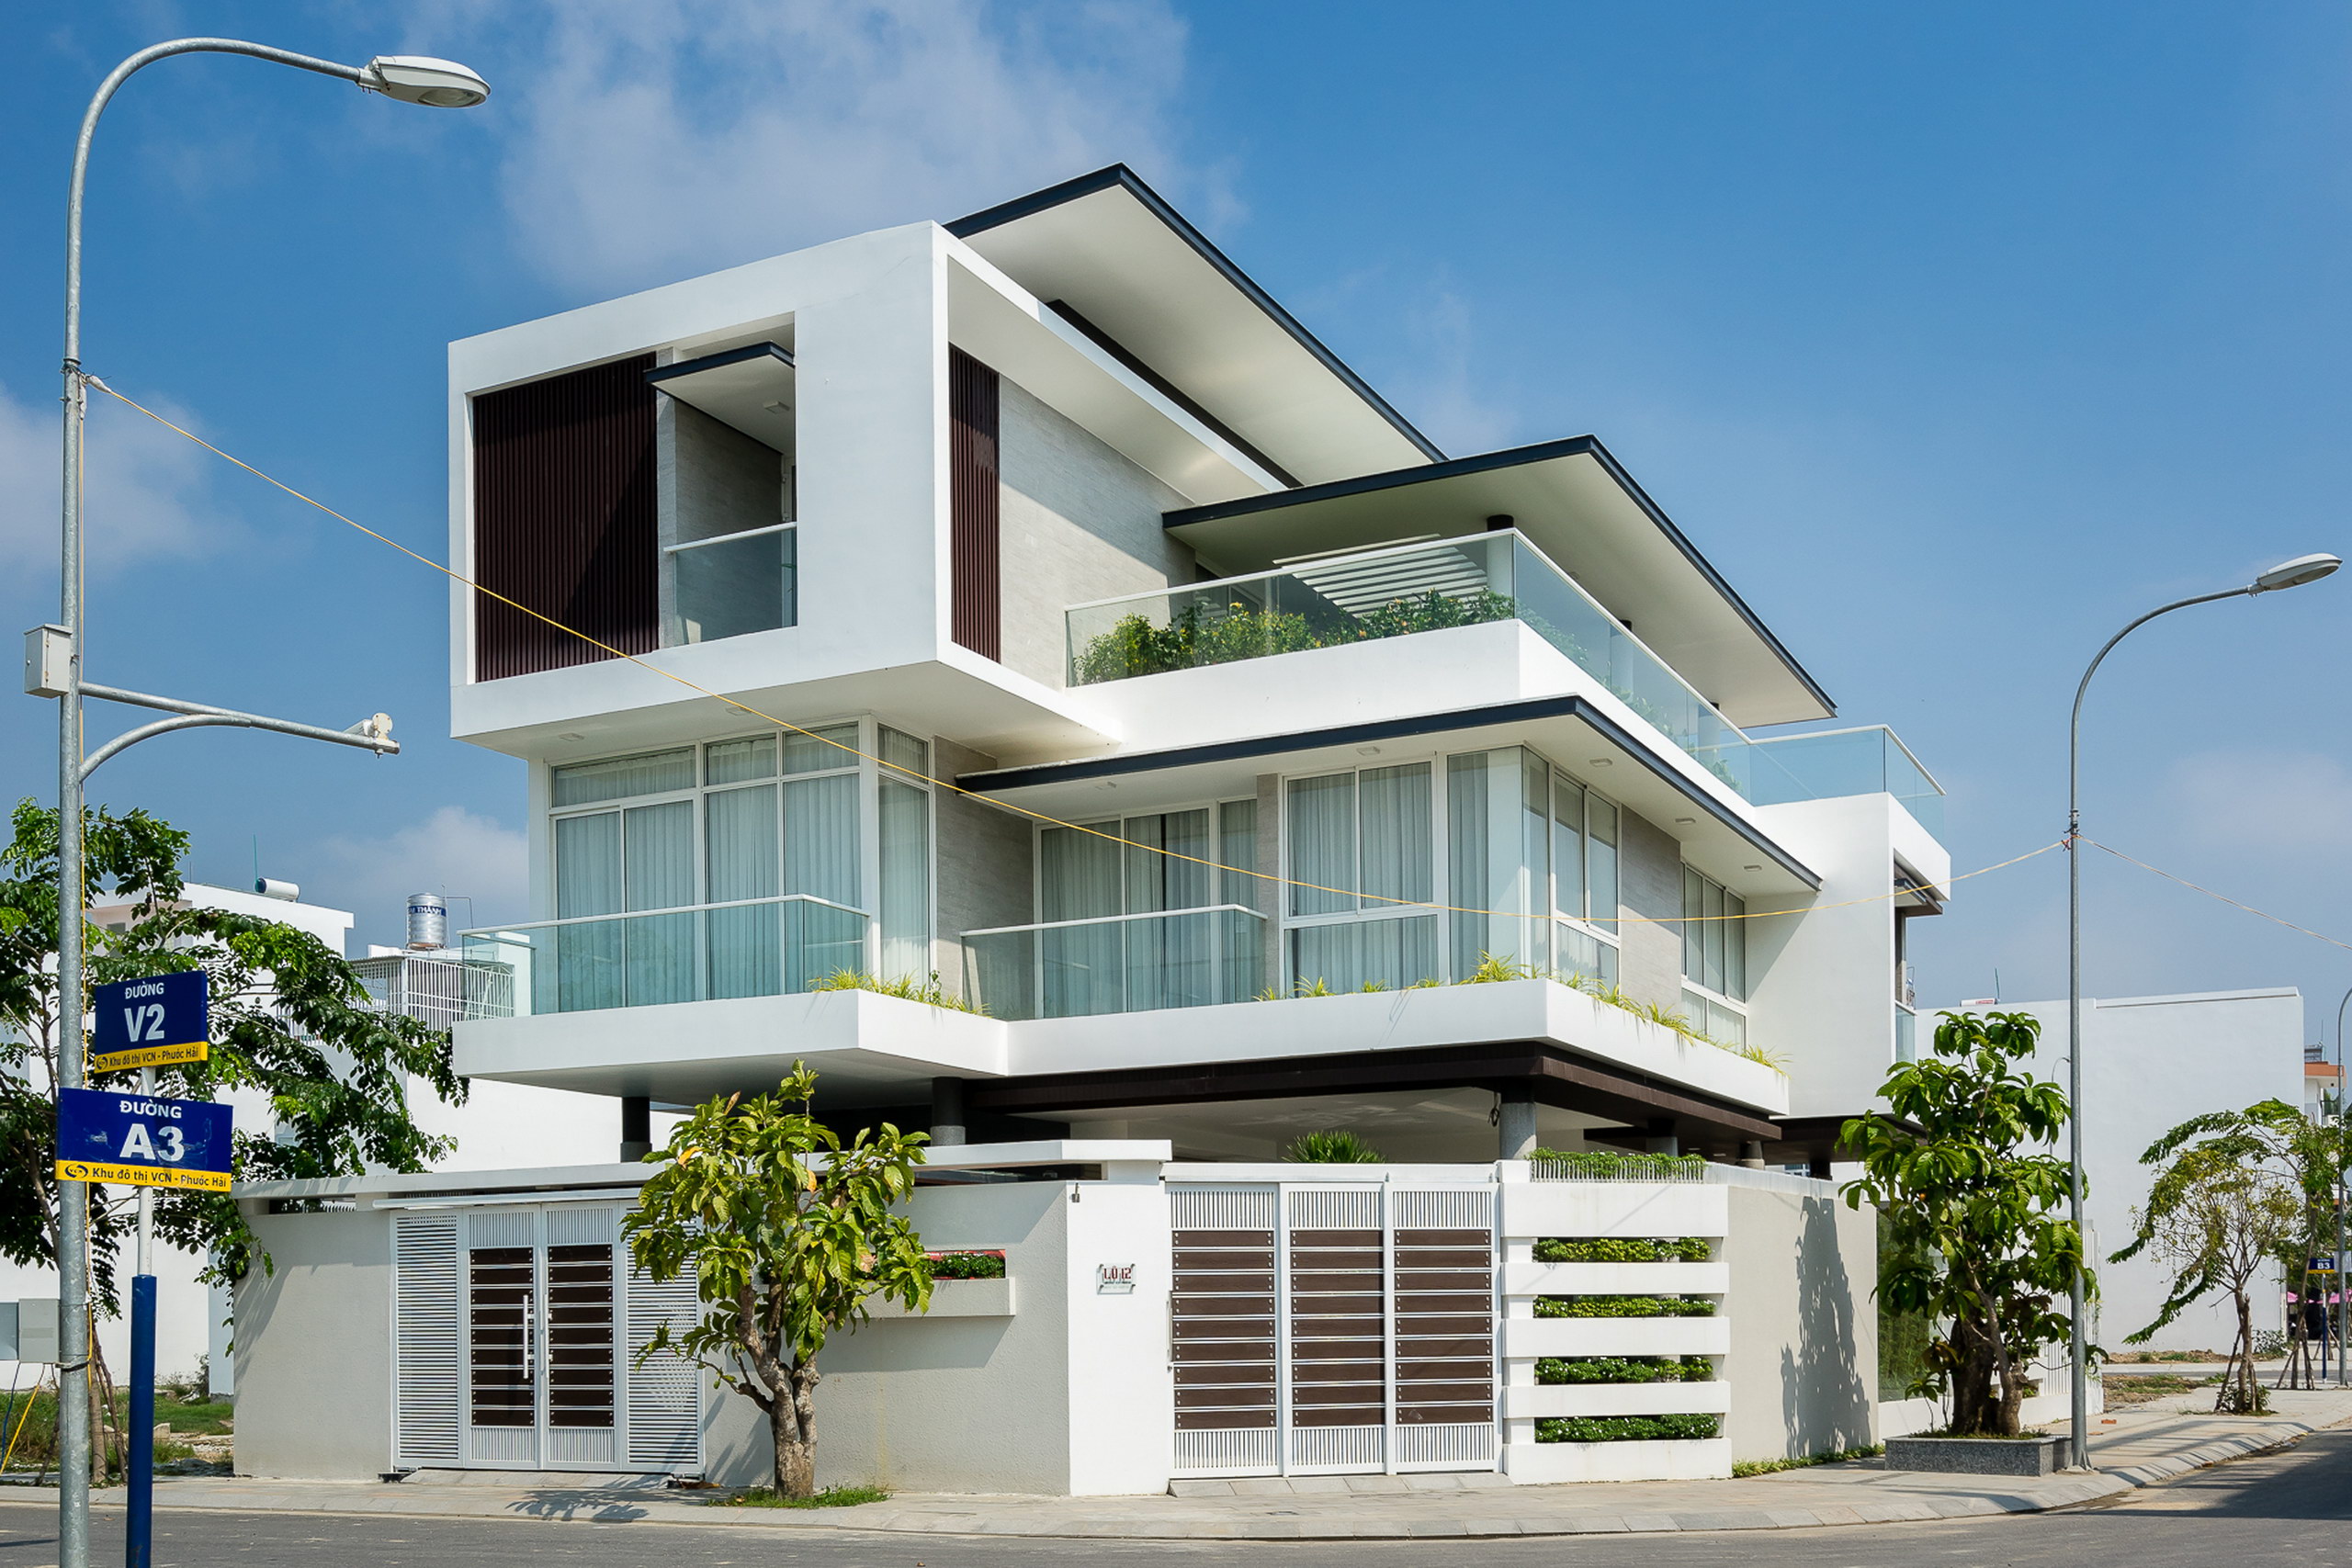 1 20 - Biệt thự lô góc 3 tầng kiến trúc hiện đại, công trình được thiết kế tại TP biển Nha Trang